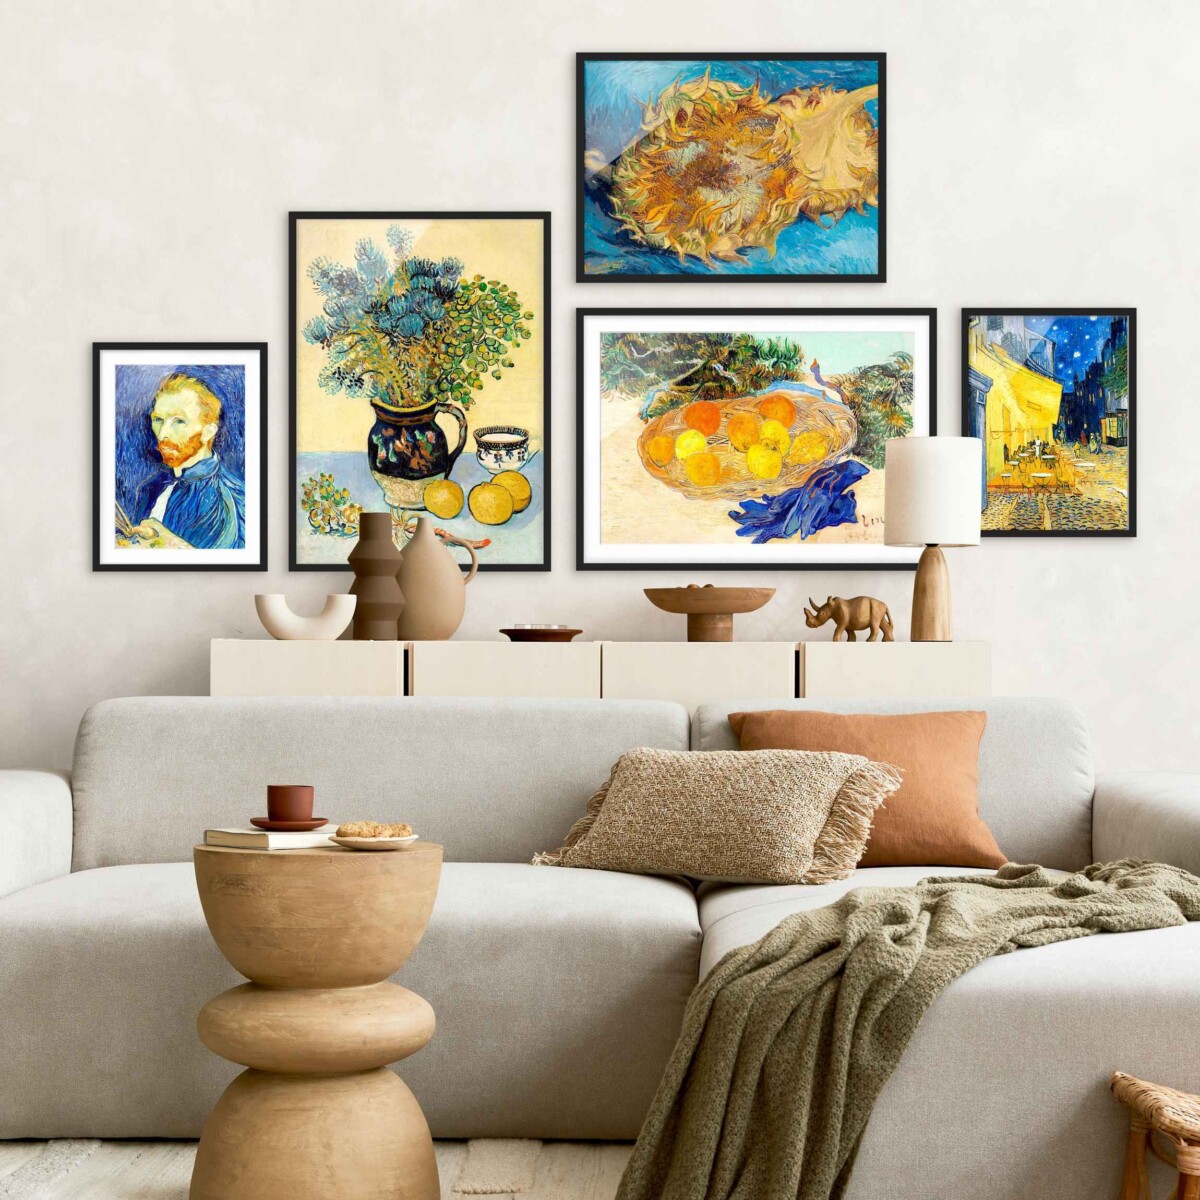 Bilderwand Wohnzimmer – Wir lieben van Gogh